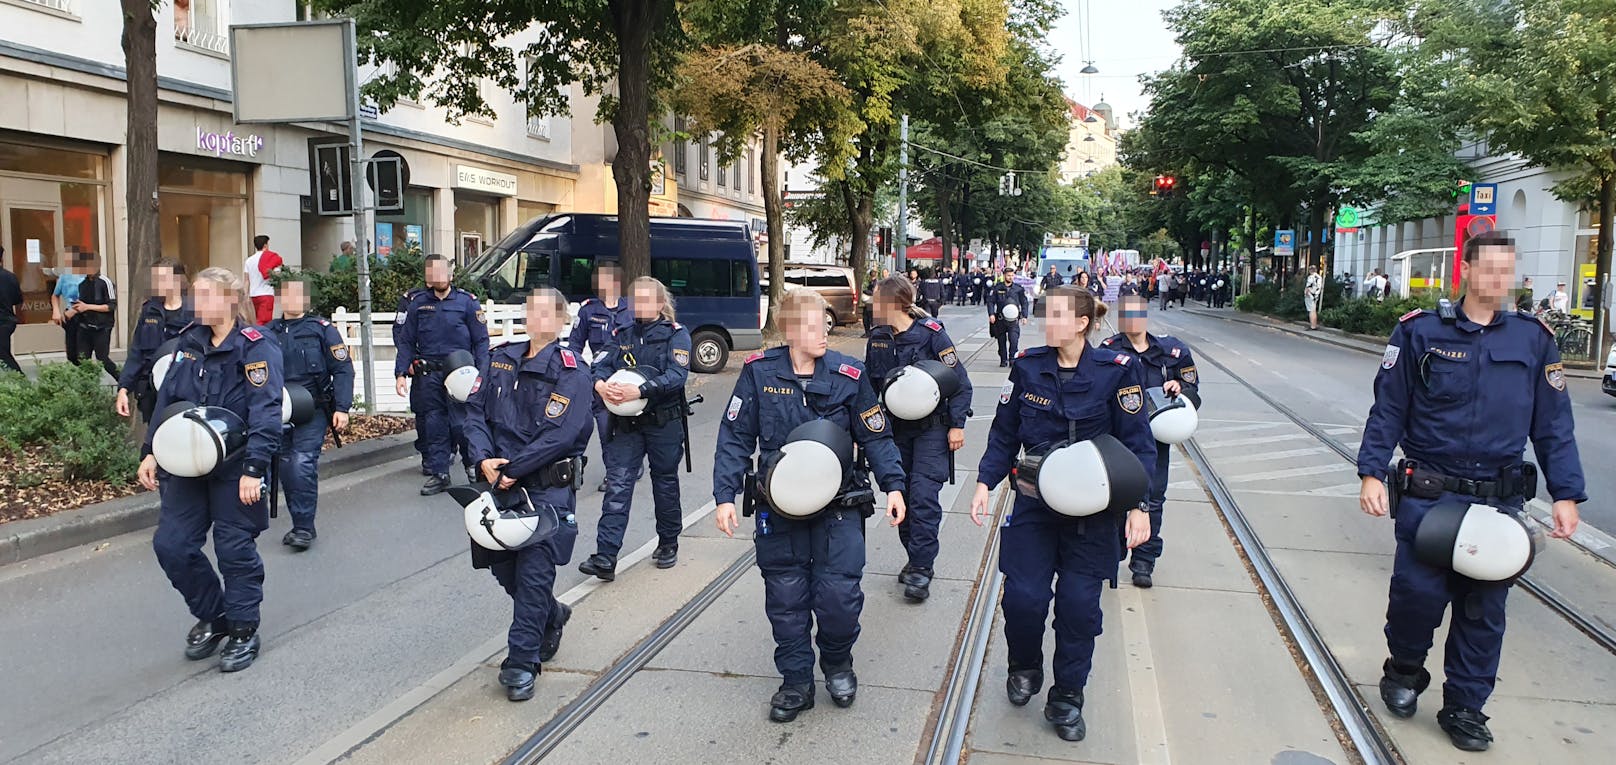 Am Freitagabend gingen in Wien wieder linke Aktivisten auf die Straße, um gegen Männergewalt und Faschismus zu demonstrieren.